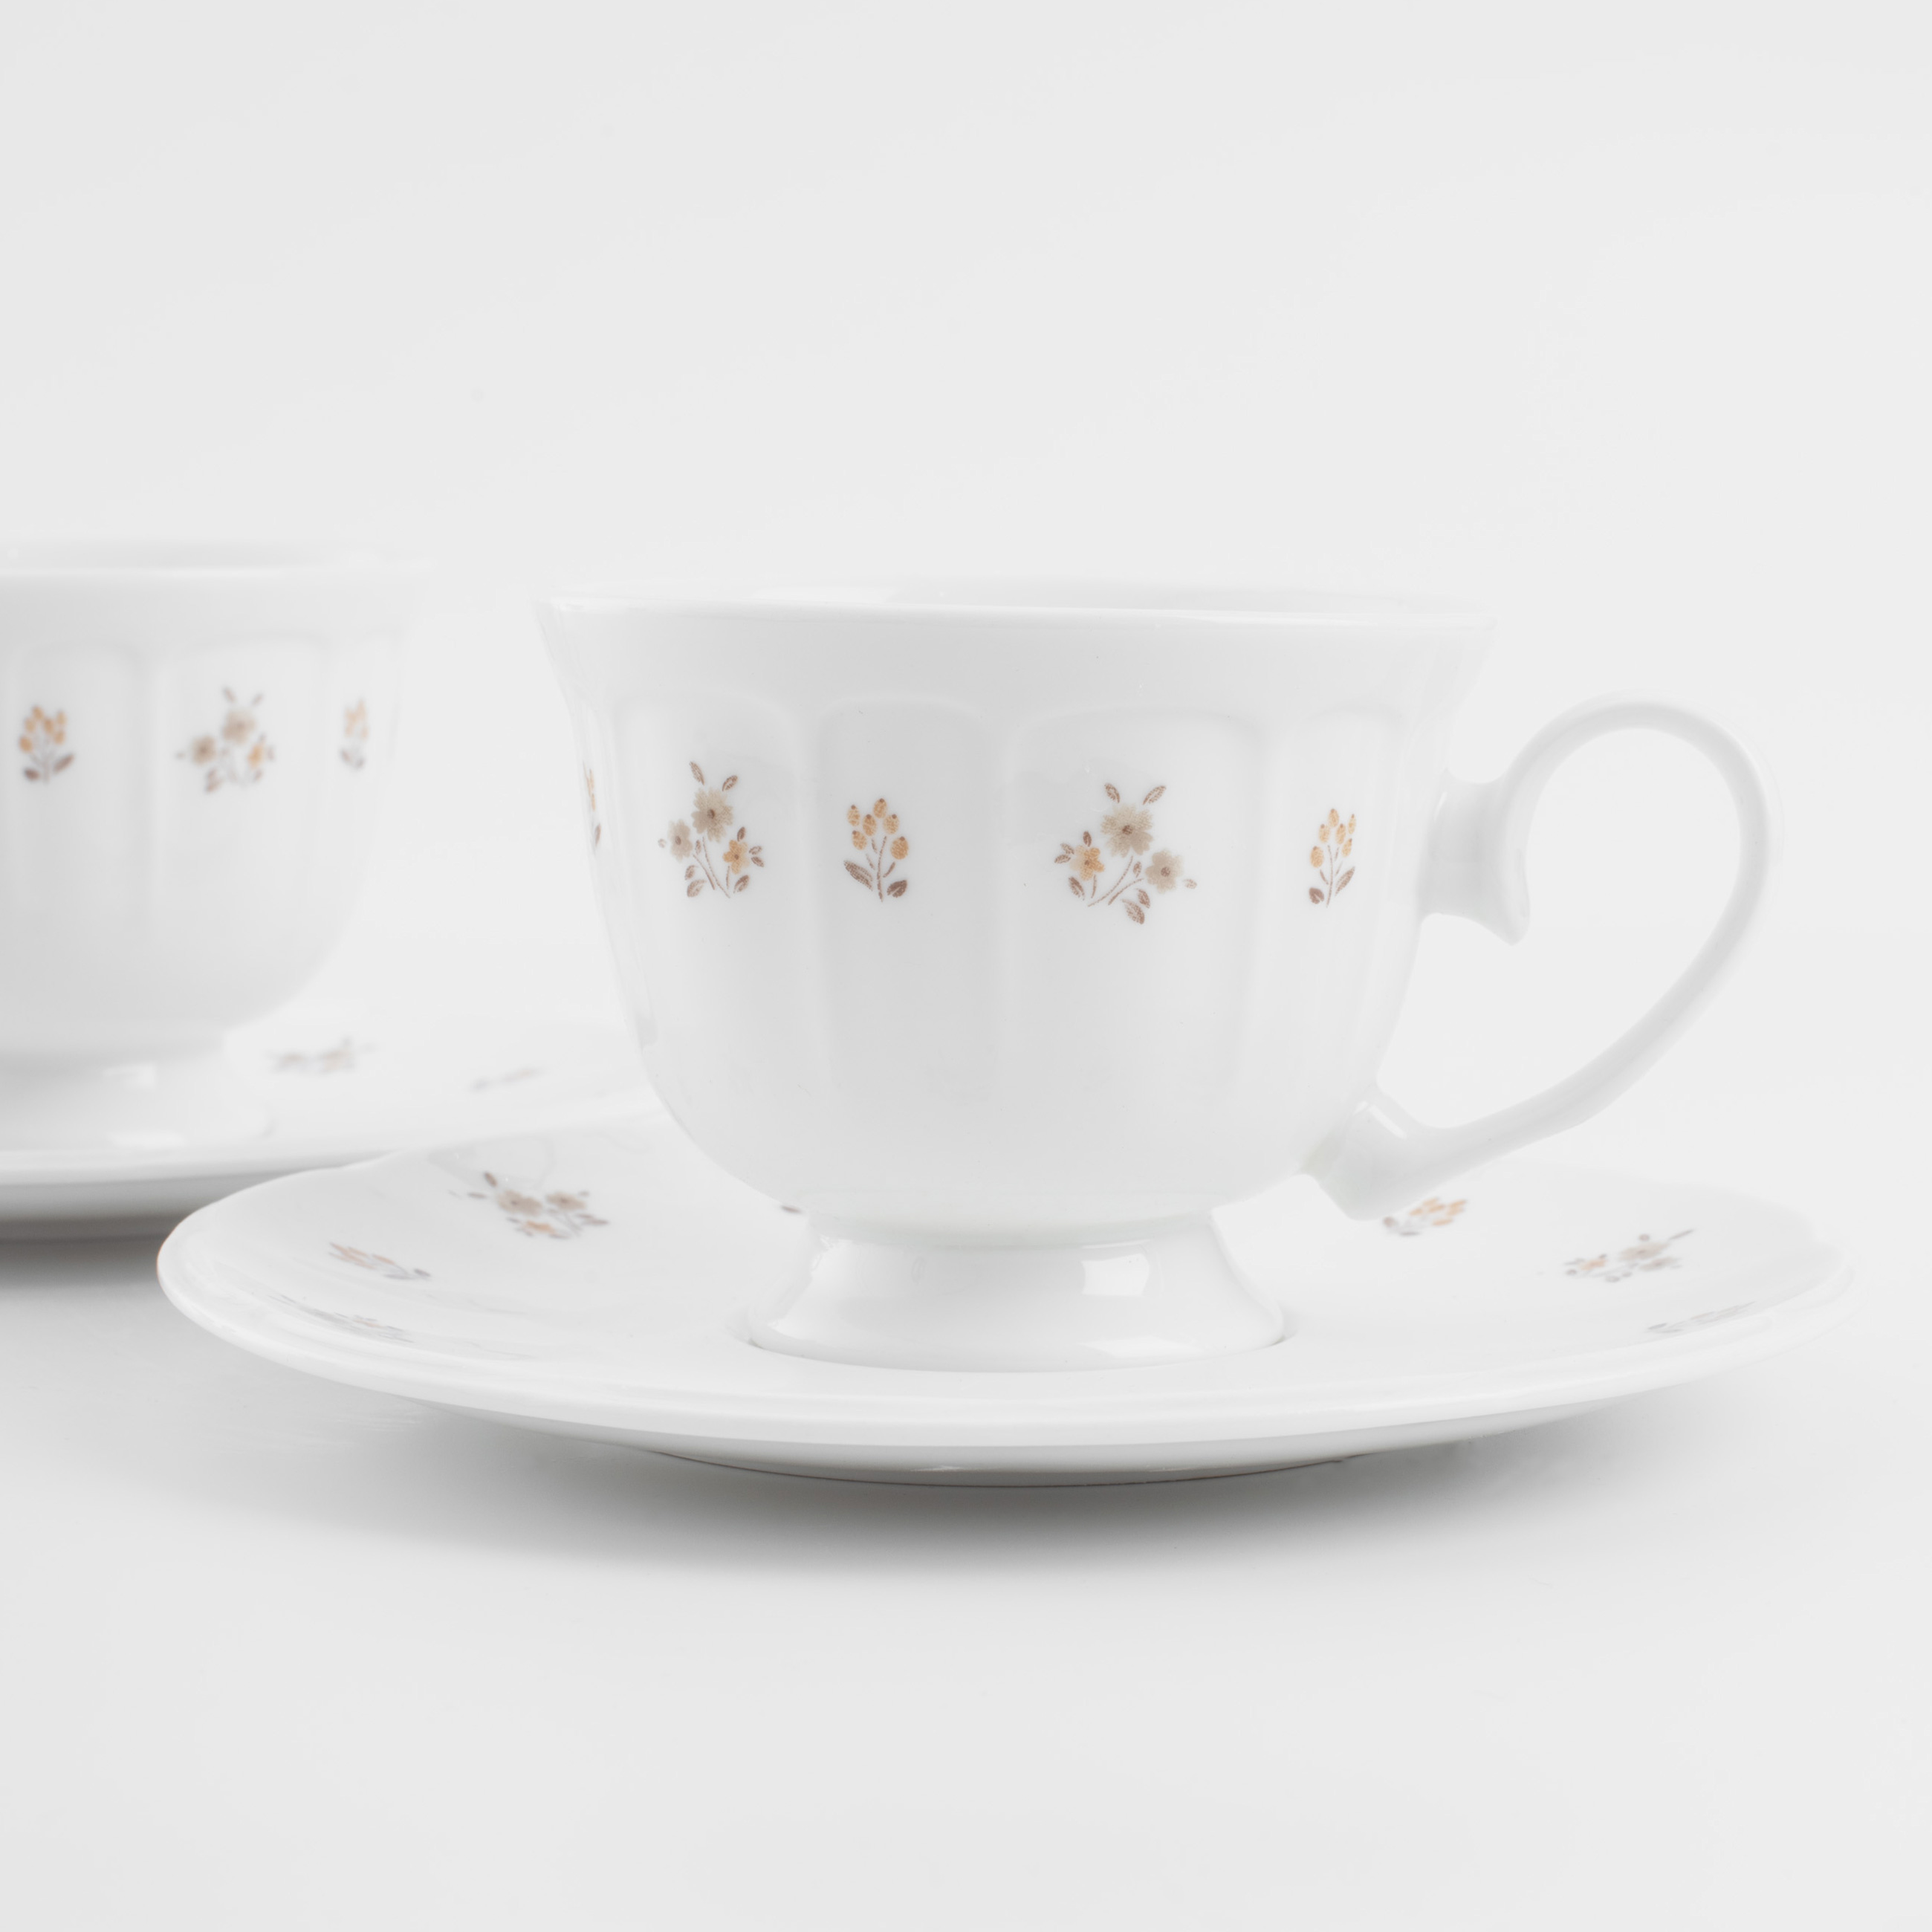 Пара чайная, 2 перс, 4 пр, 180 мл, фарфор N, белая, Винтажные цветы, La flore изображение № 2